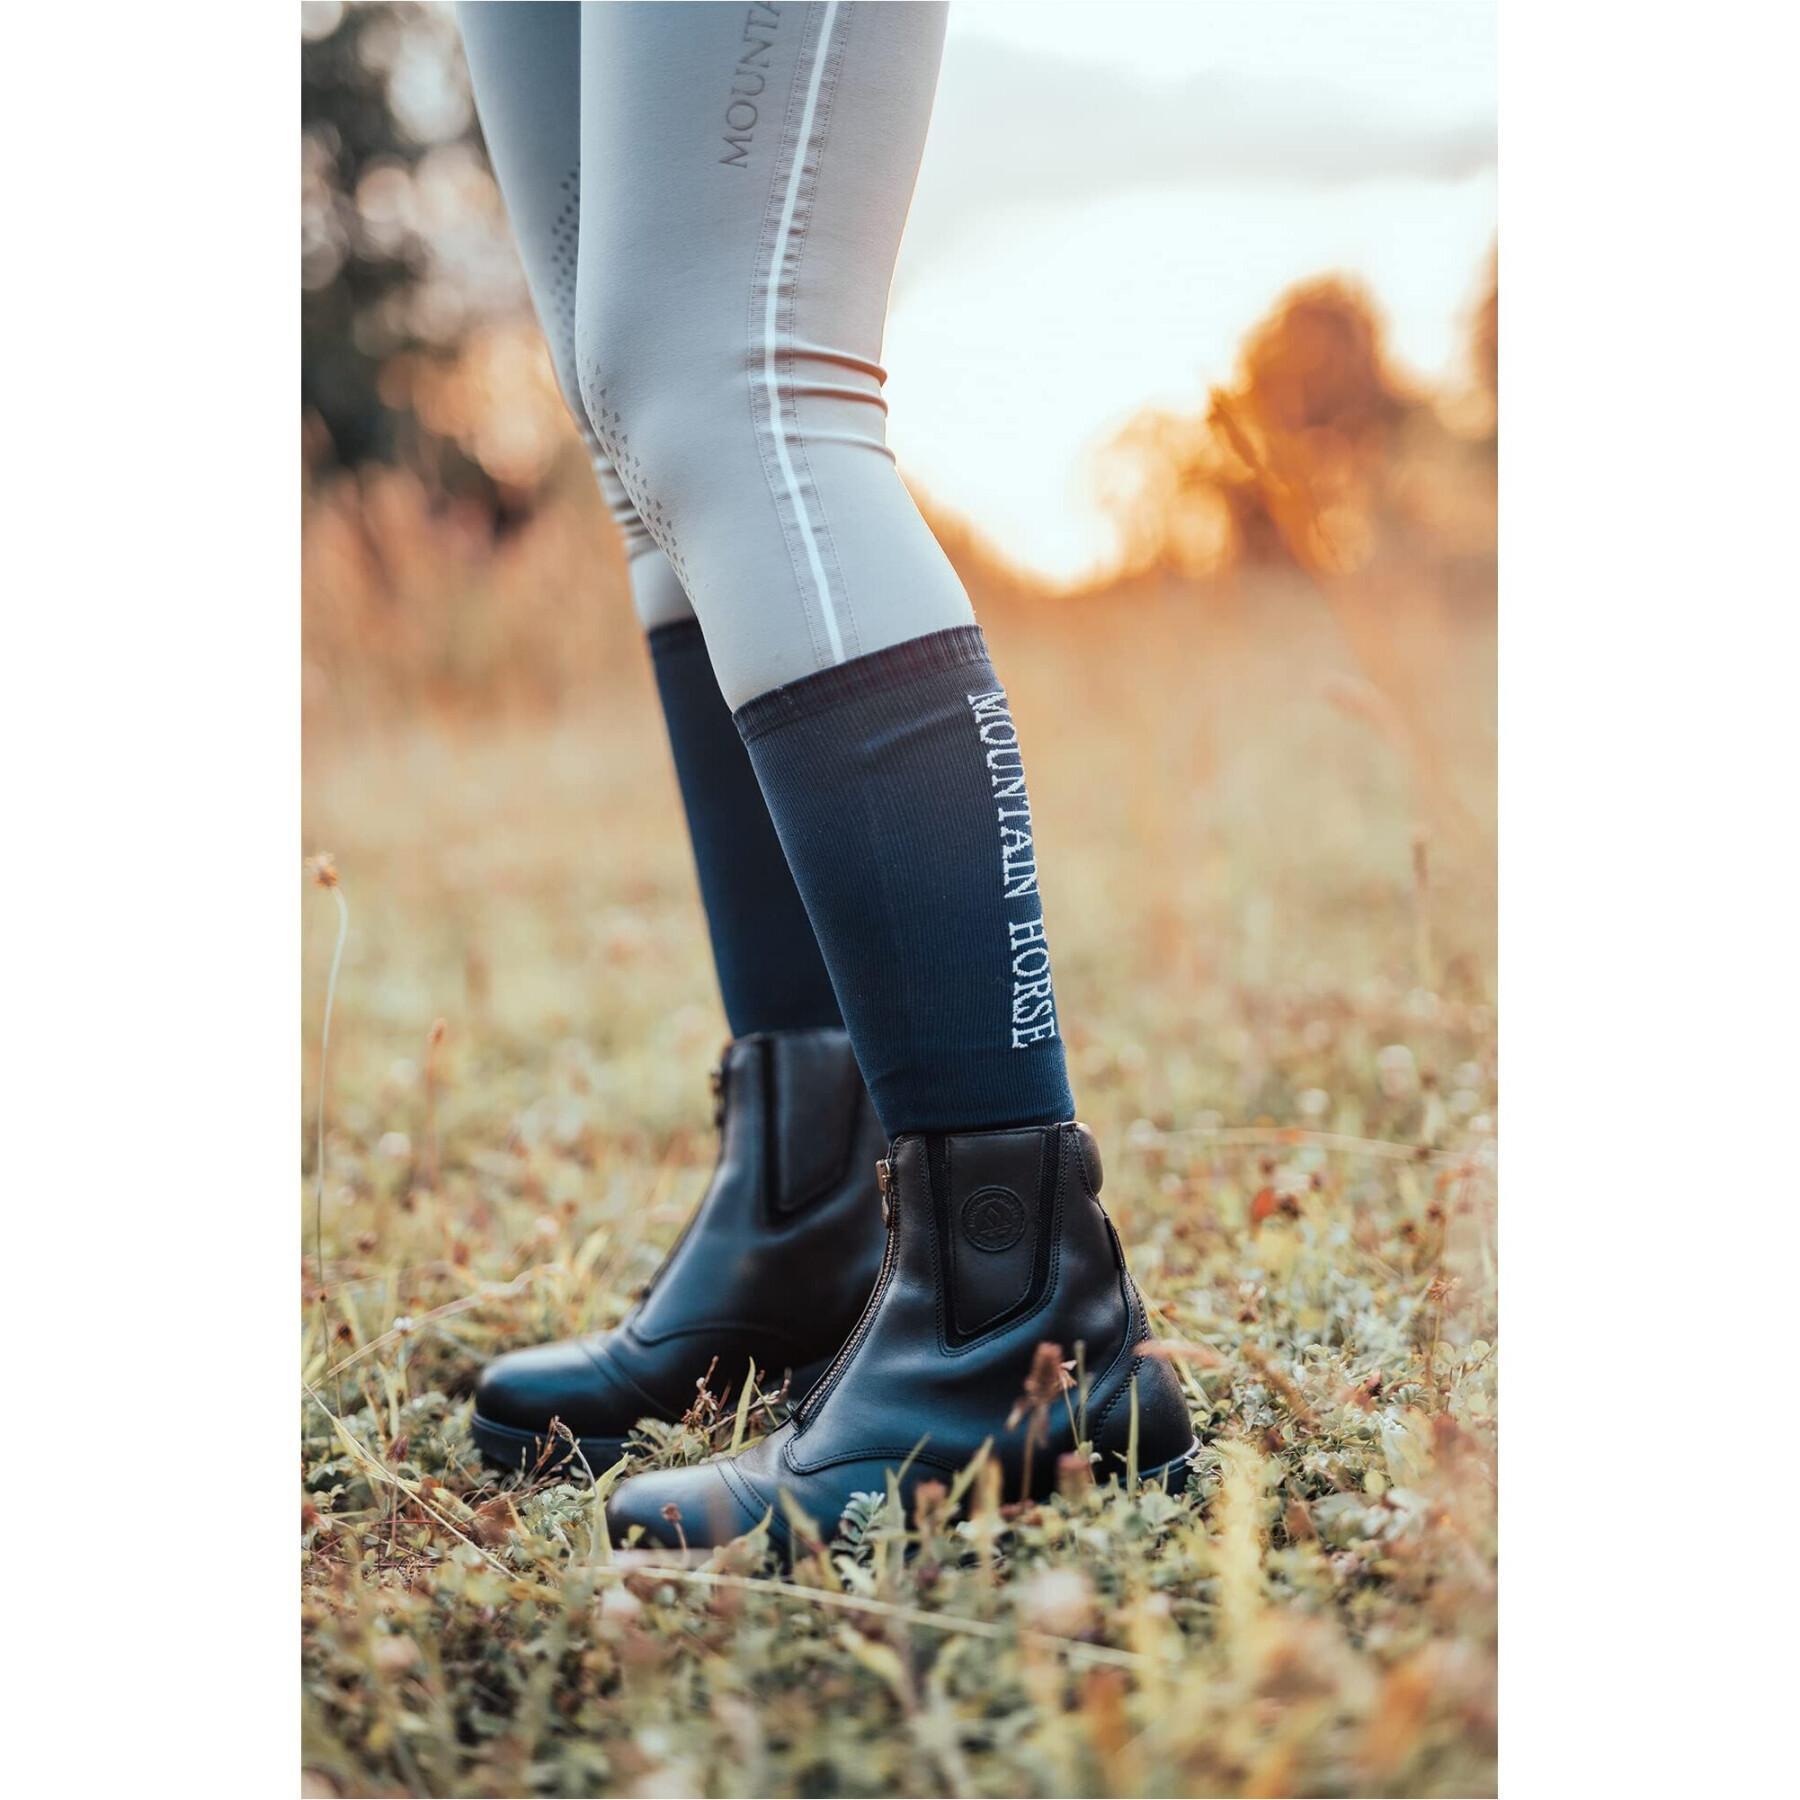 Boots botas de equitação zipadas Mountain Horse Wild River